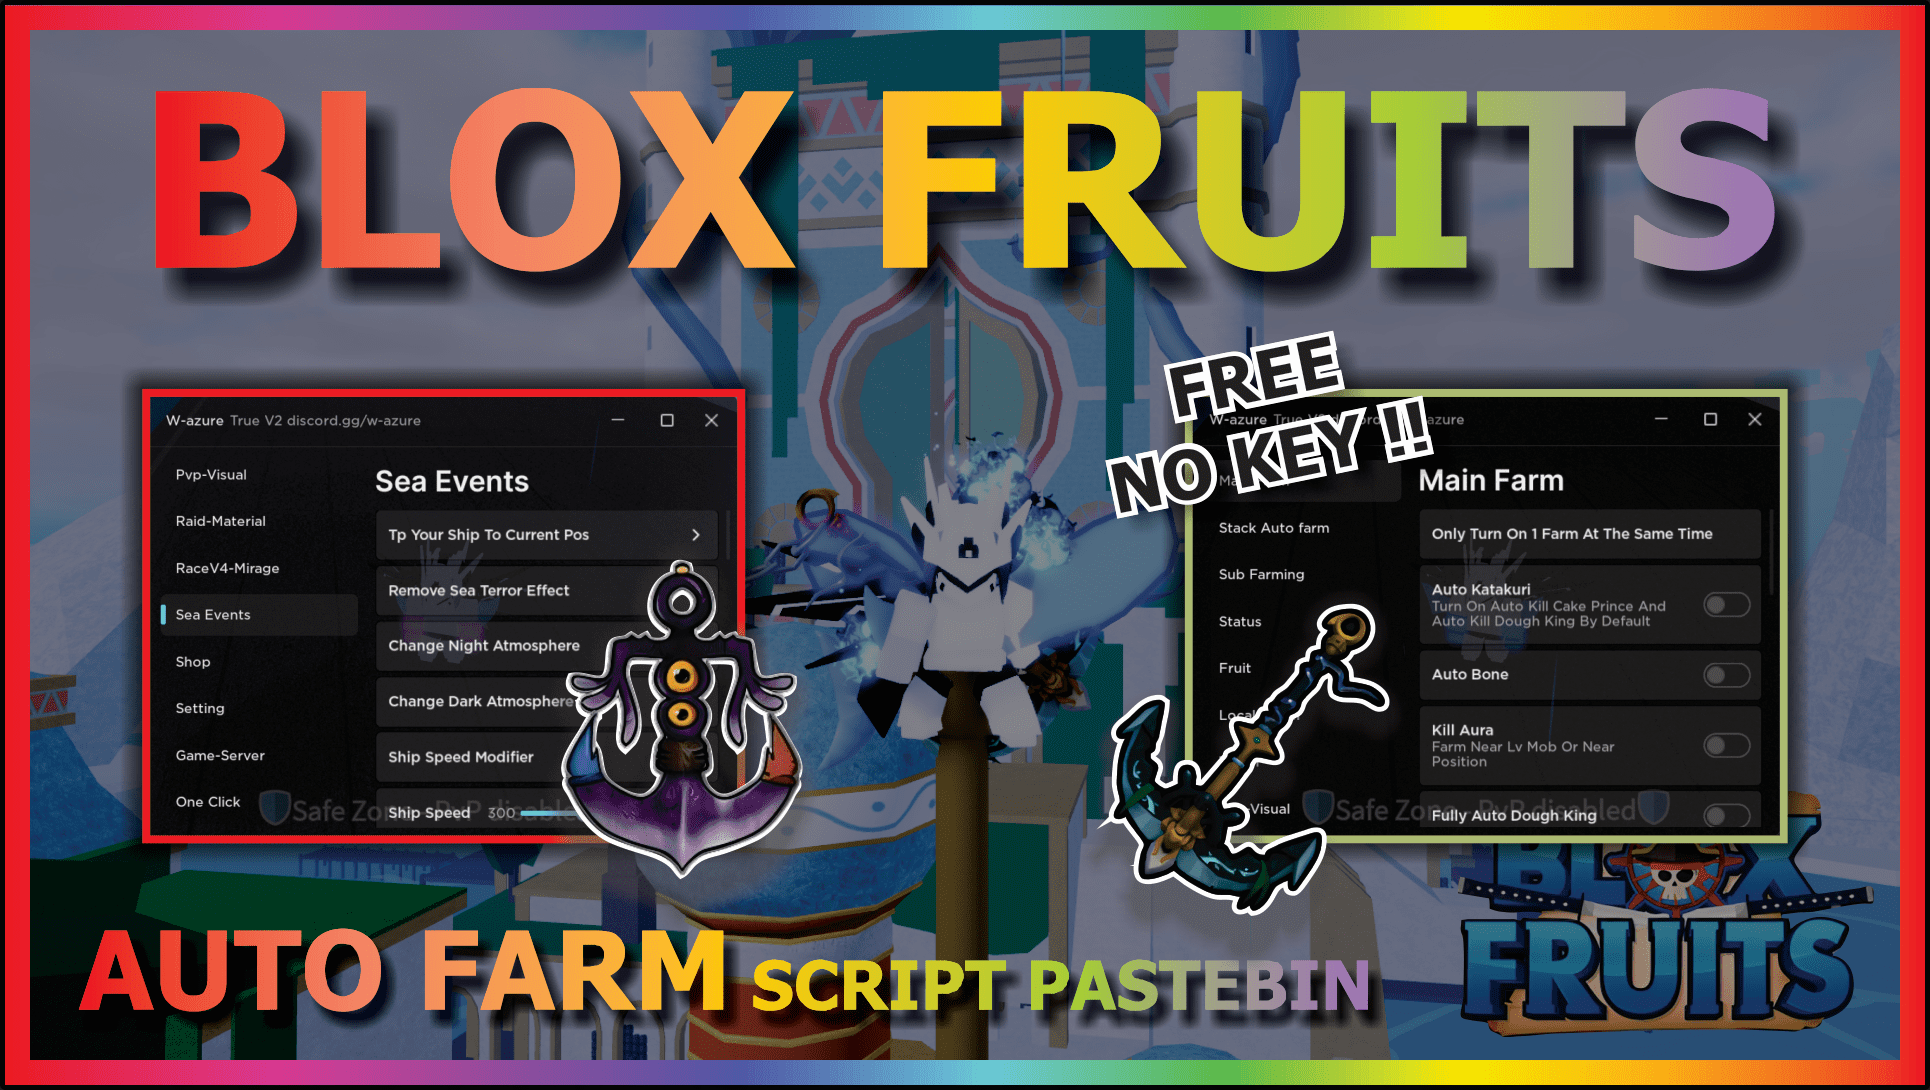 Blox fruits script